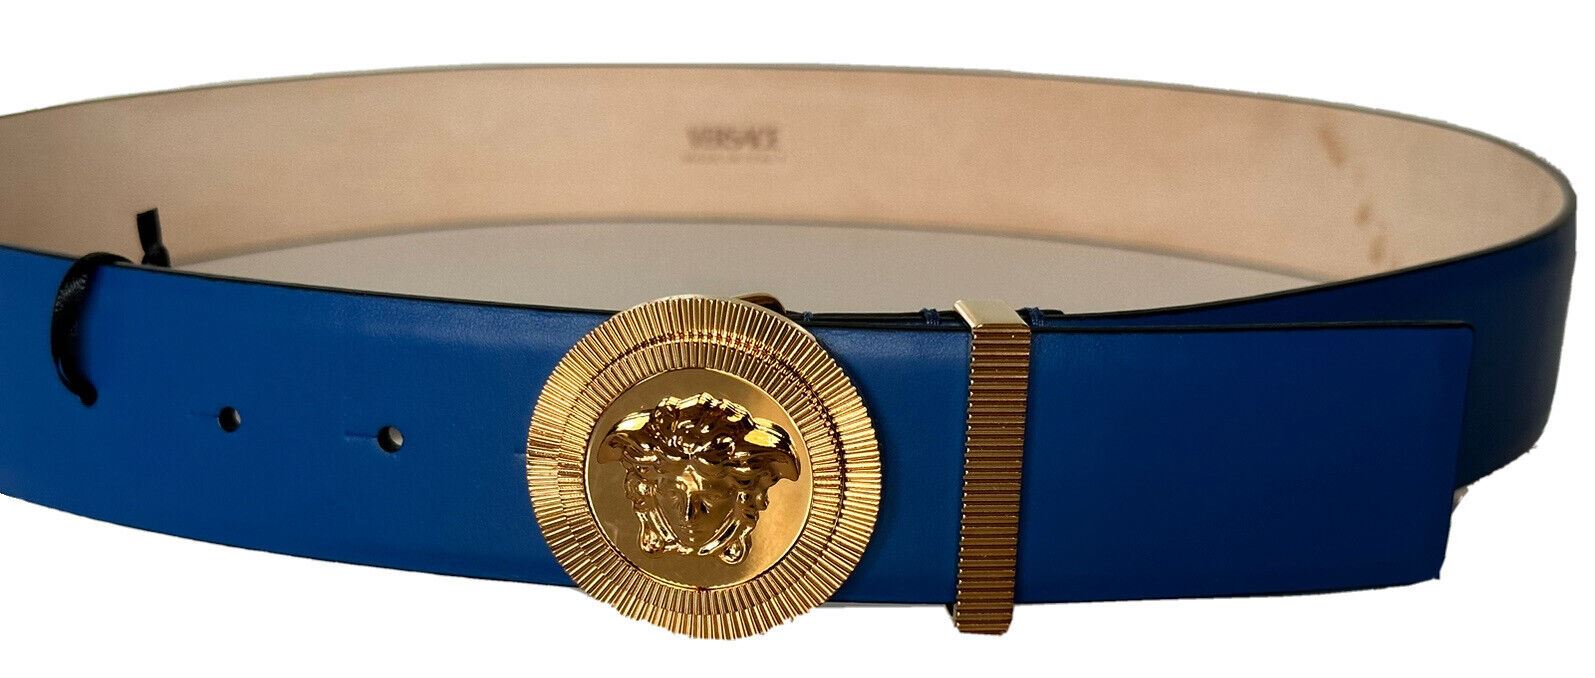 Синий кожаный ремень с пряжкой Medusa Versace 550 долларов США 90 (36), сделано в Италии 